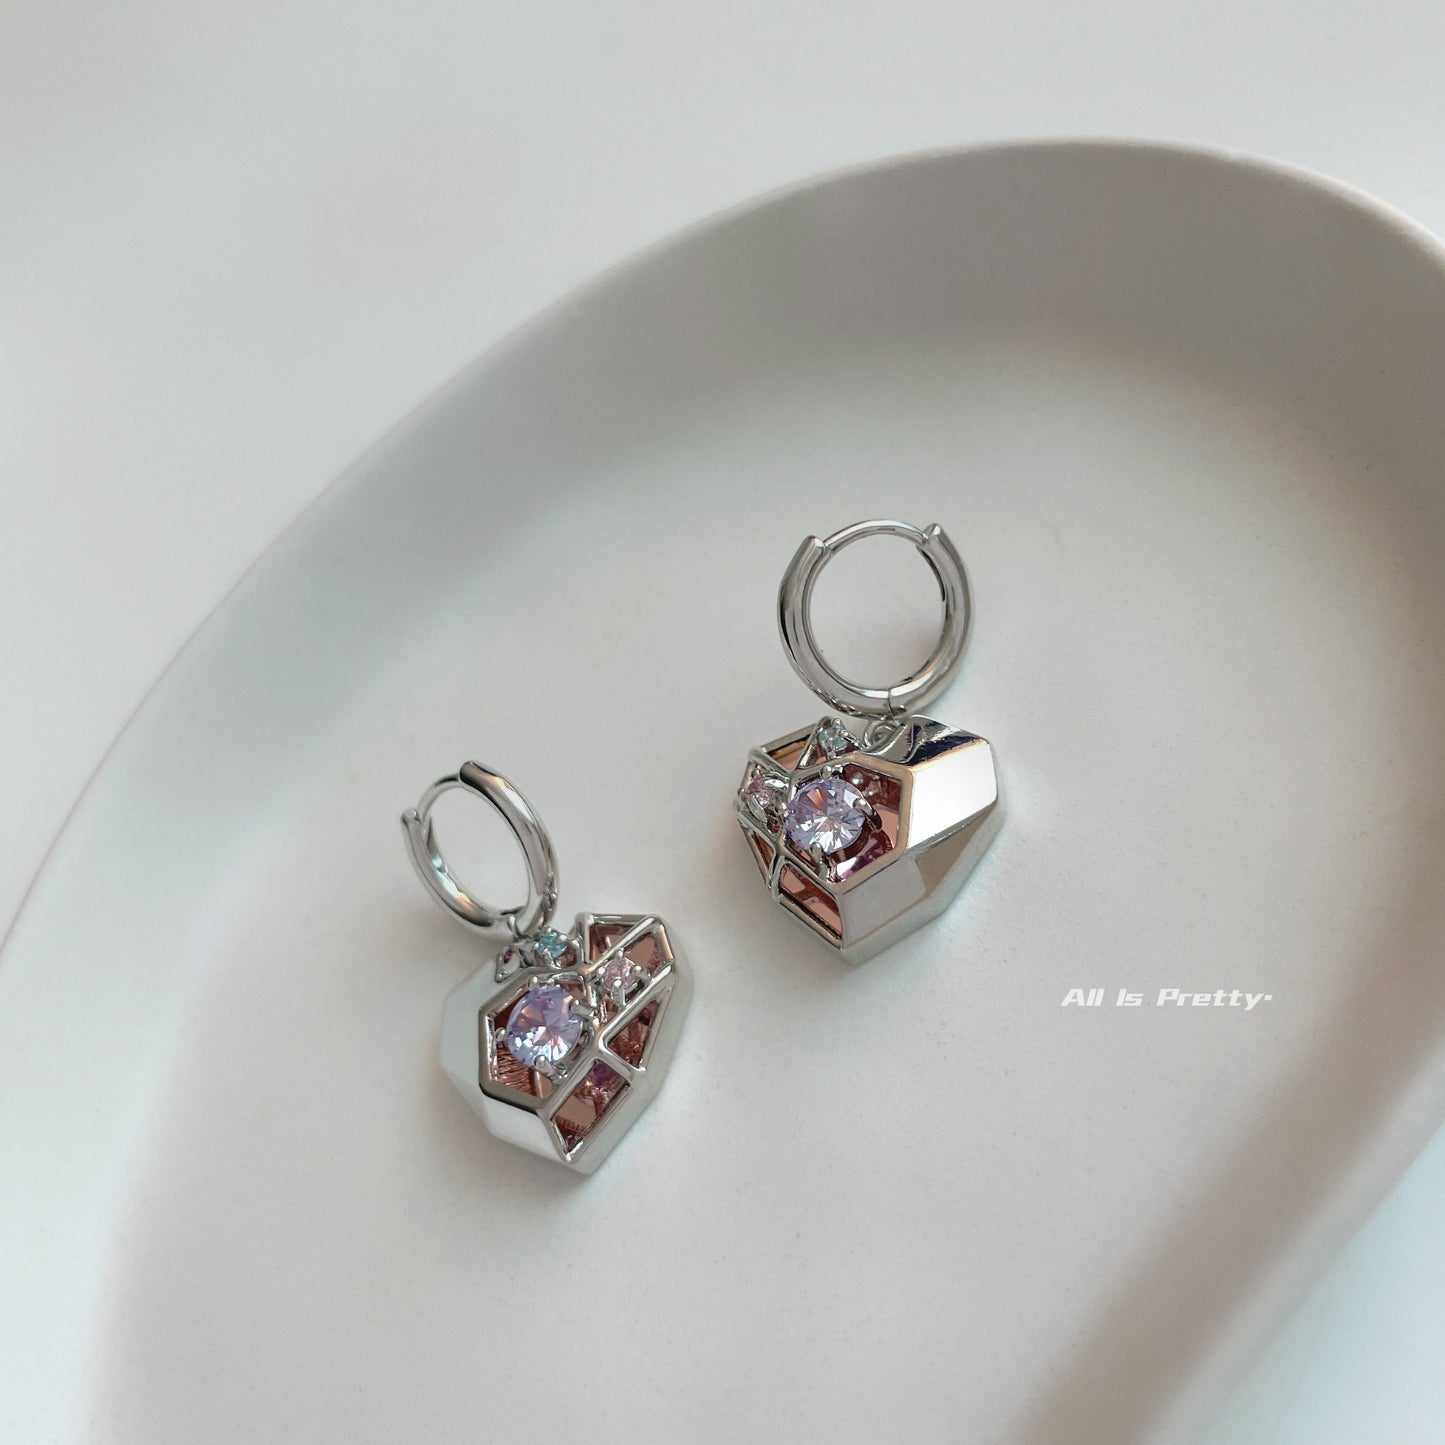 Geometry mirror heart earrings